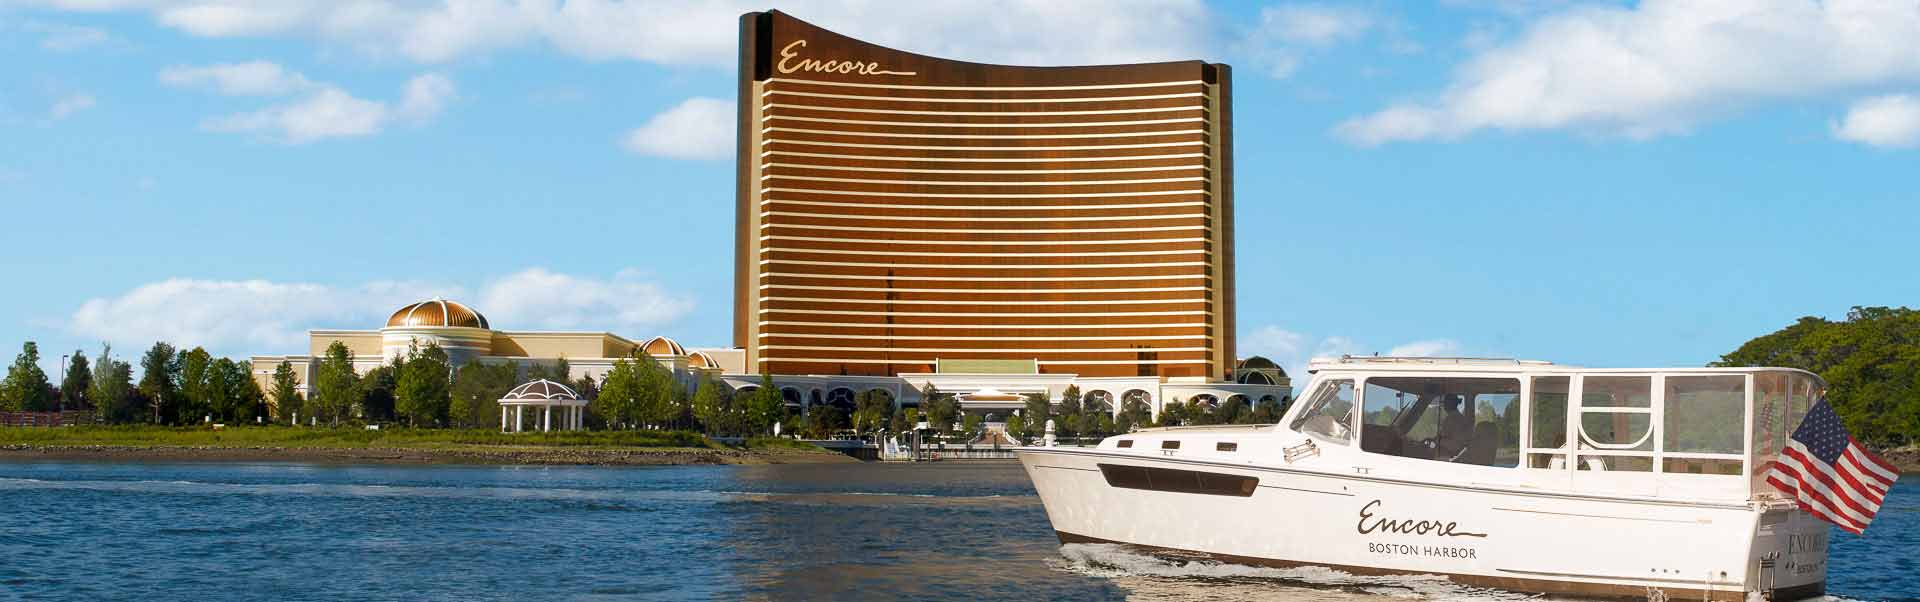 Boston Gambling Cruises